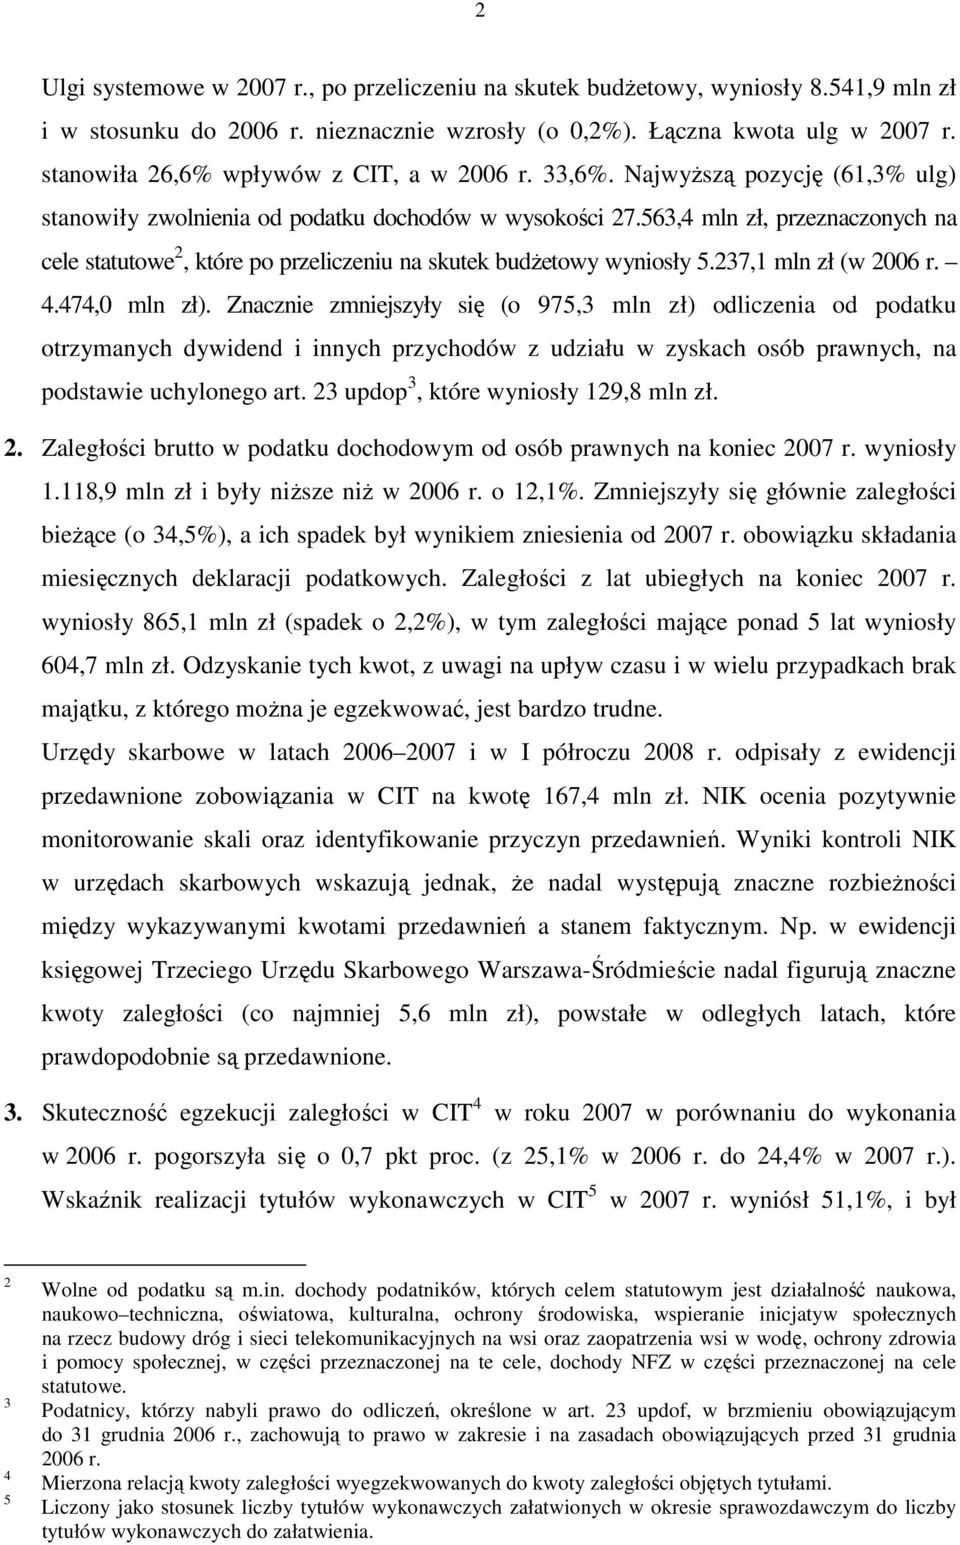 563,4 mln zł, przeznaczonych na cele statutowe 2, które po przeliczeniu na skutek budŝetowy wyniosły 5.237,1 mln zł (w 2006 r. 4.474,0 mln zł).